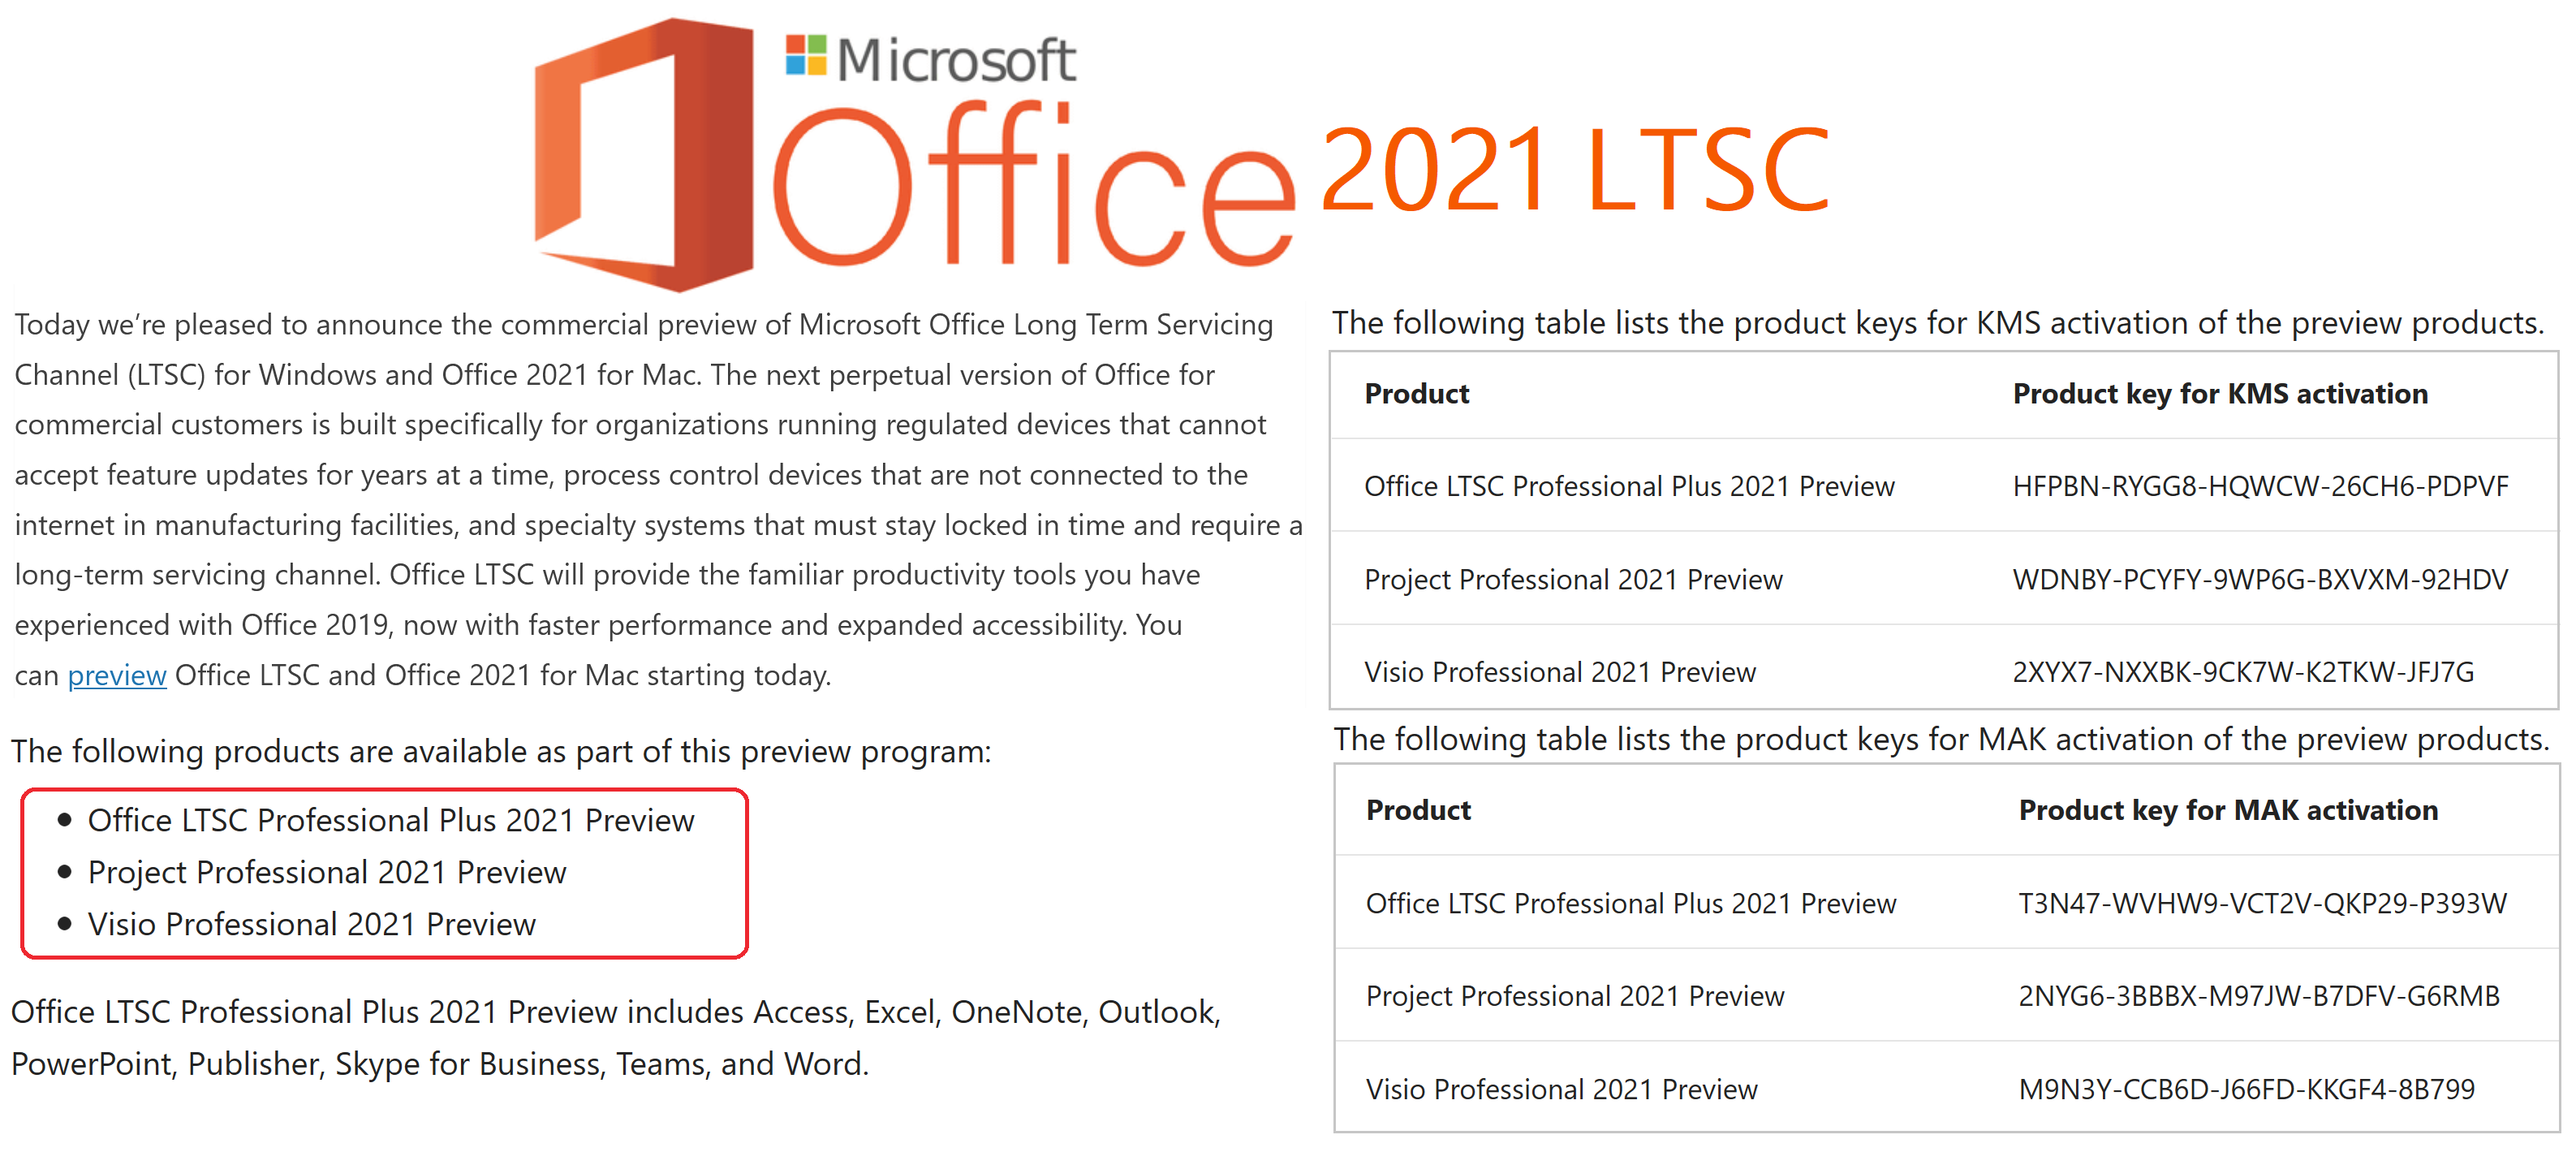 Microsoft Office LTSC 2021. Ключ офис 2021 LTSC. Microsoft Office LTSC professional Plus 2021 ключи. Ключи для офиса LTSC профессиональный плюс 2021. Ключ офис 2021 ltsc лицензионный